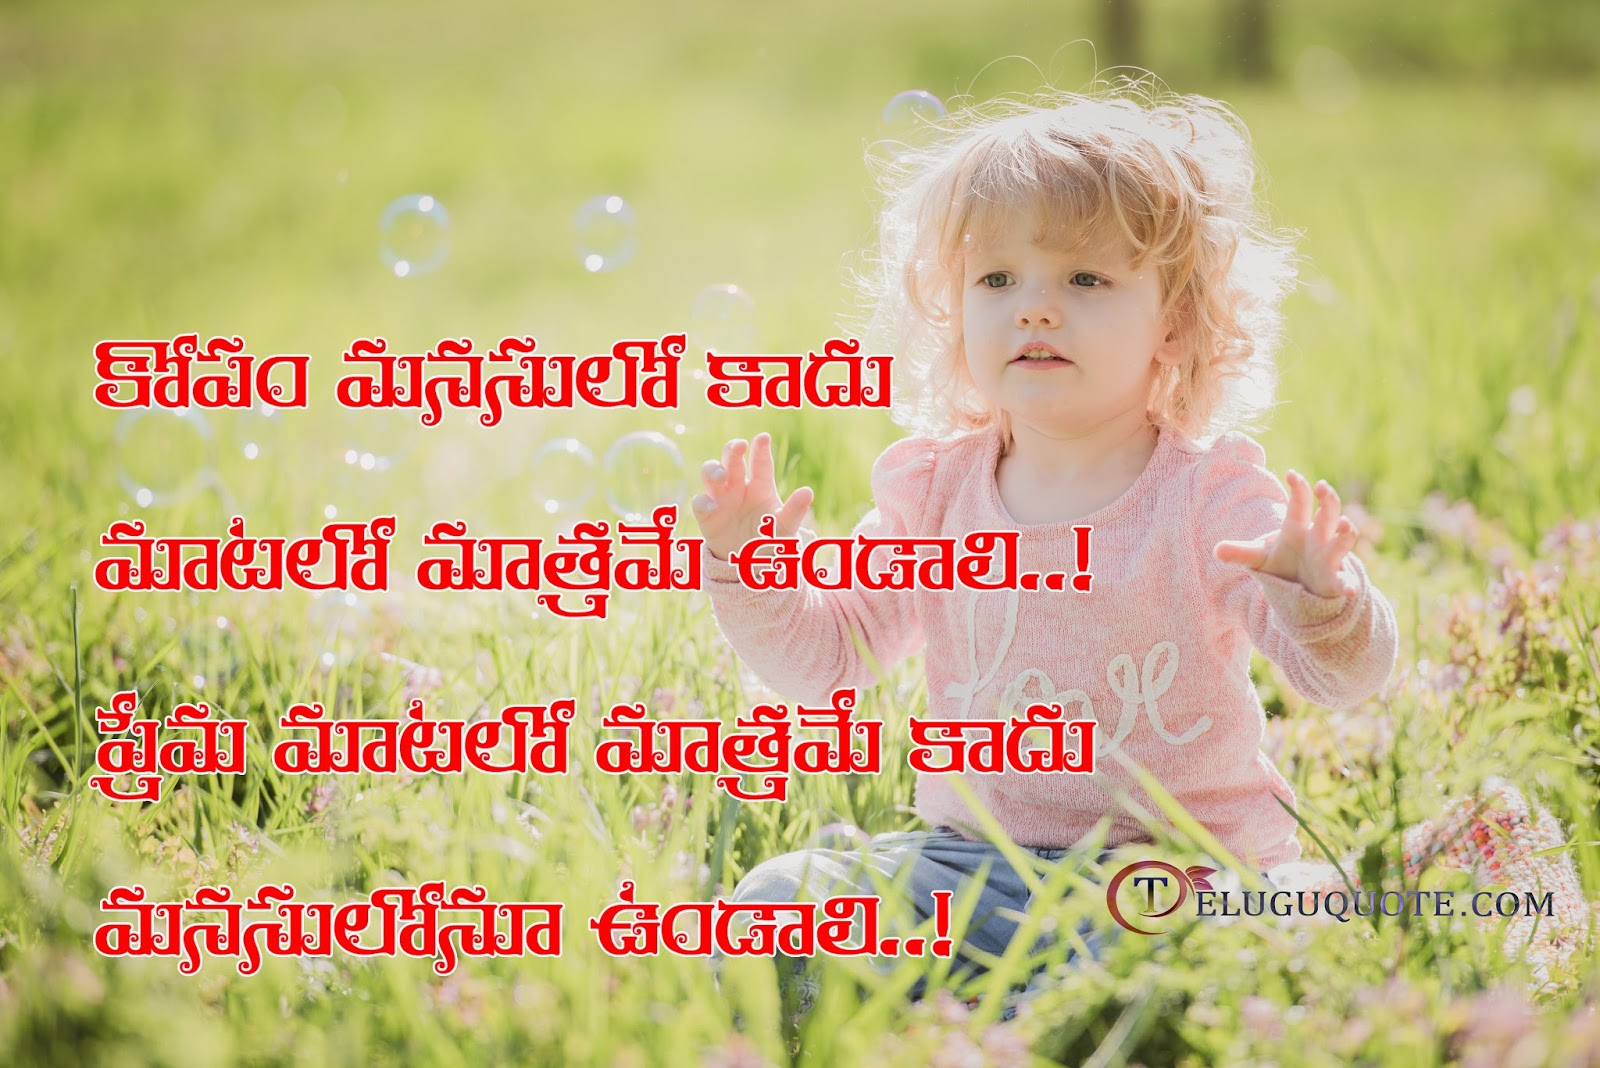 Telugu Children Quotes Telugu Quotes